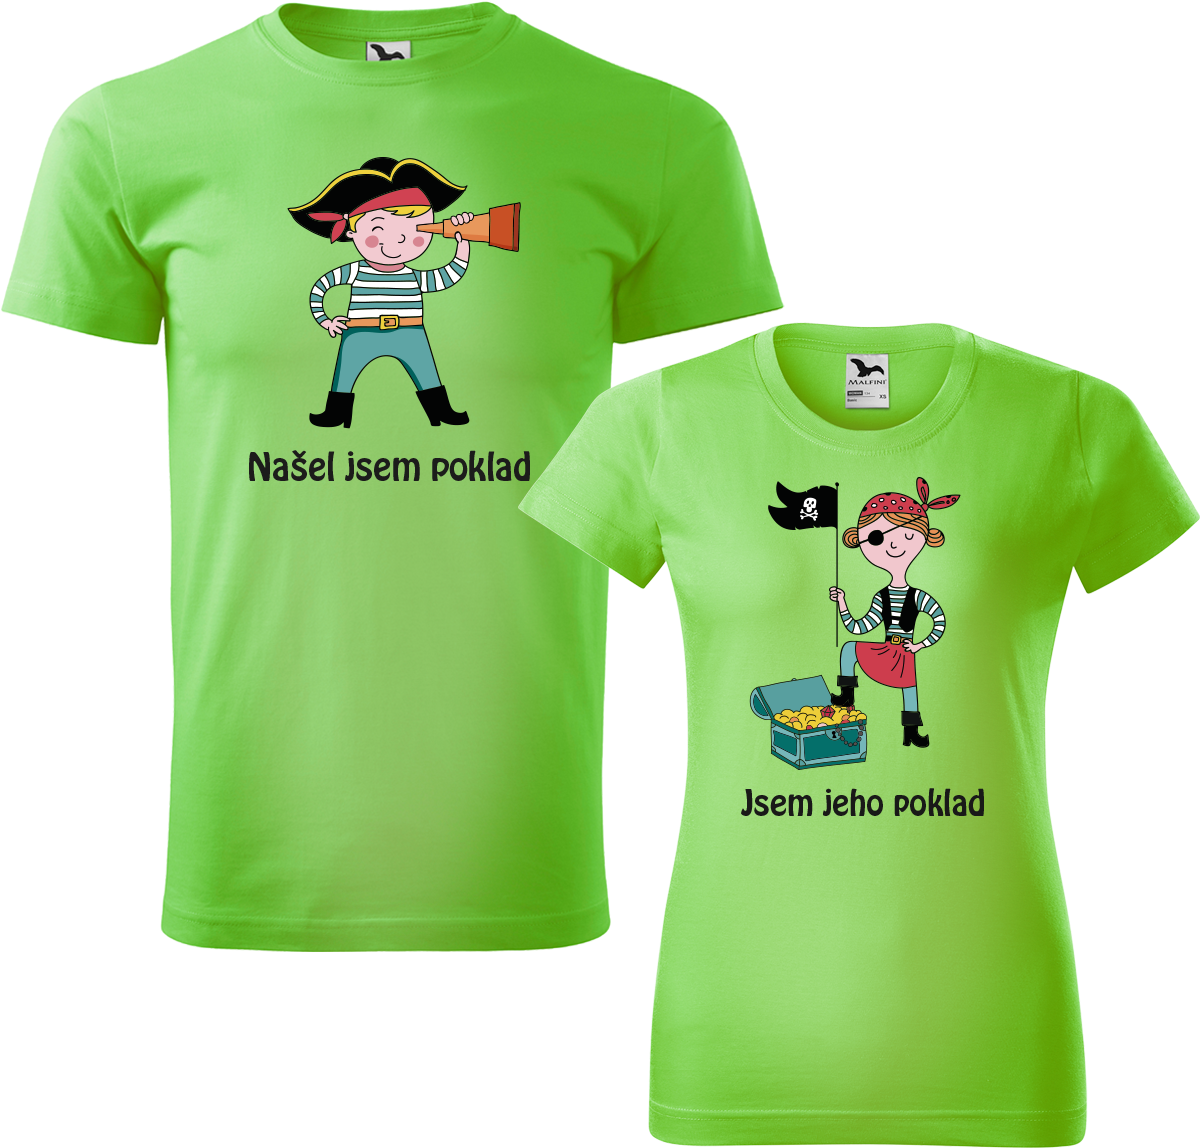 Trička pro páry - Poklad Barva: Apple Green (92), Velikost dámské tričko: S, Velikost pánské tričko: L